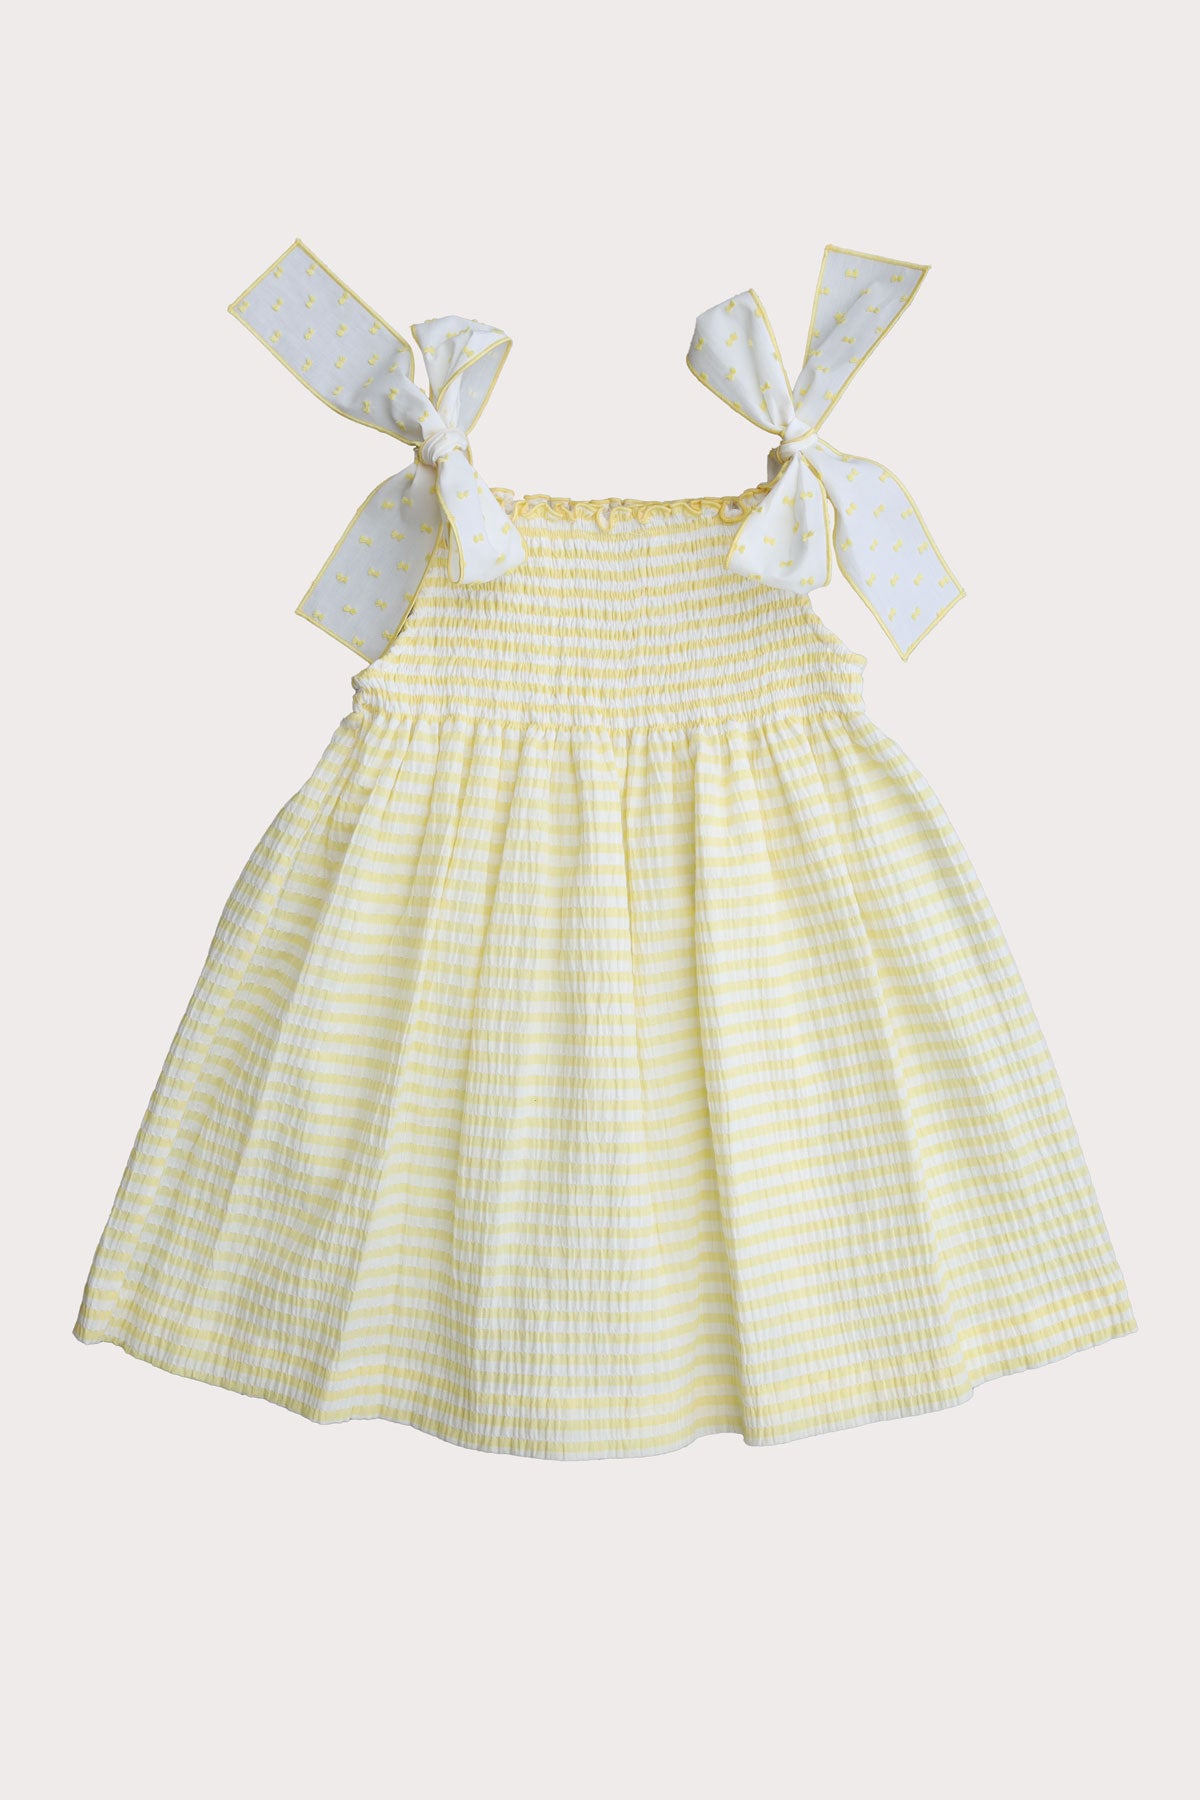 lemon & white striped girls summer dress